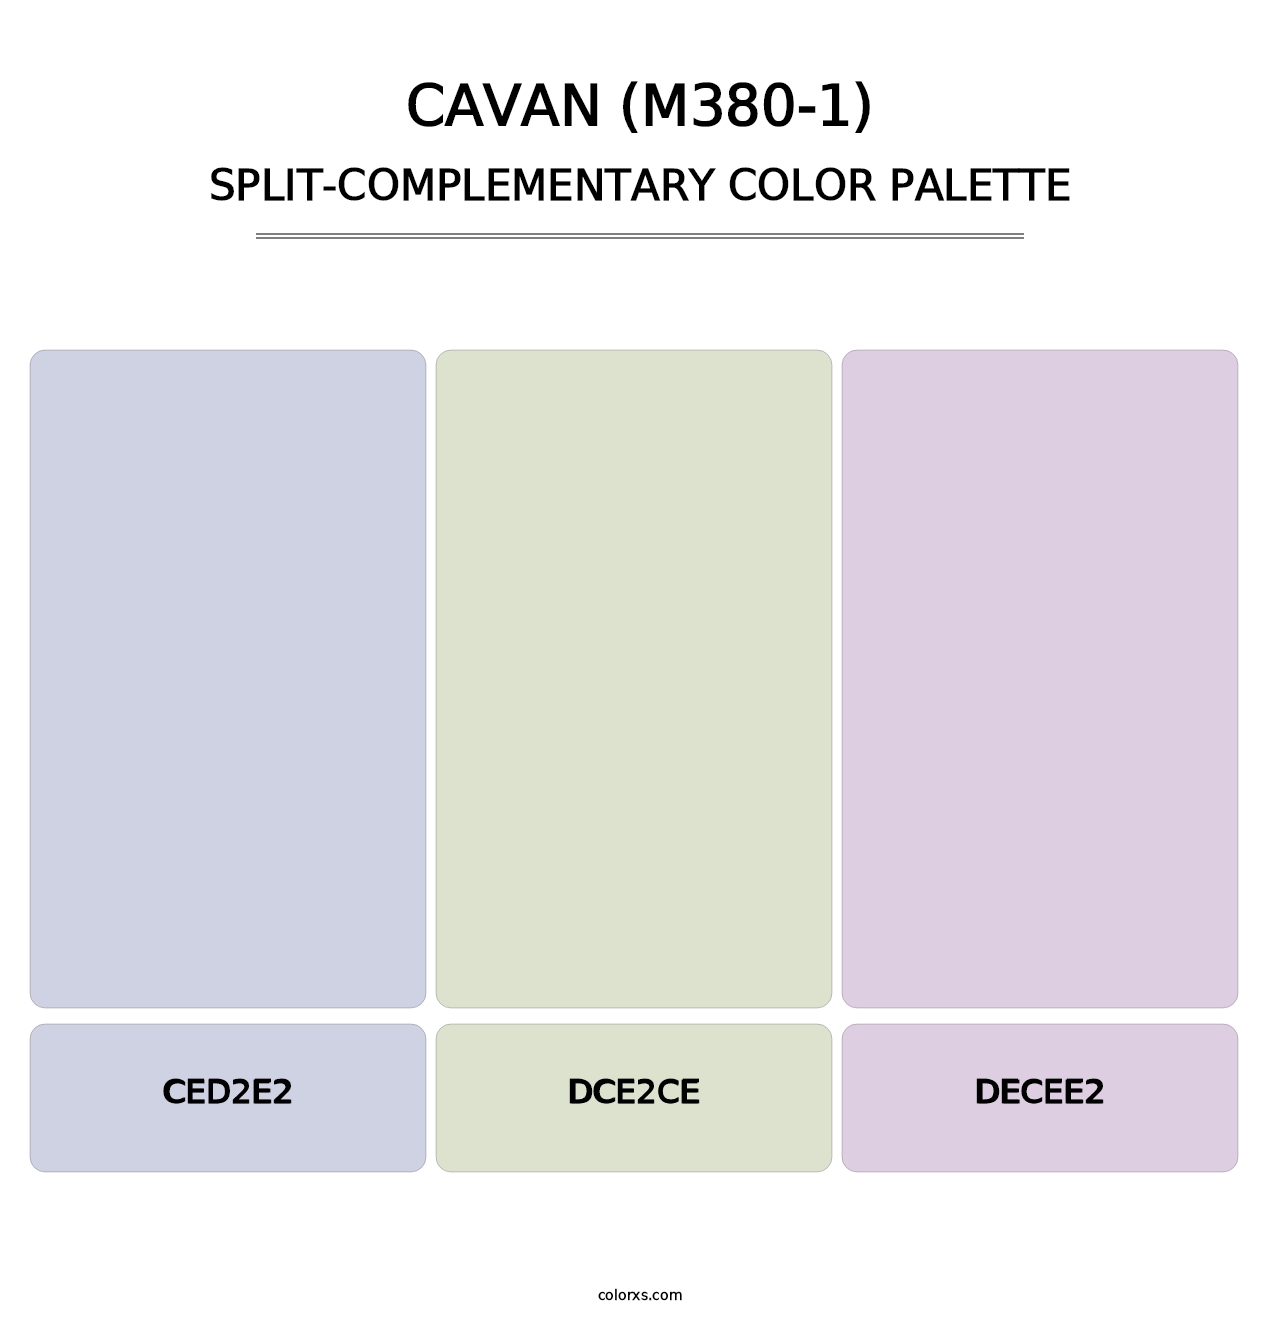 Cavan (M380-1) - Split-Complementary Color Palette